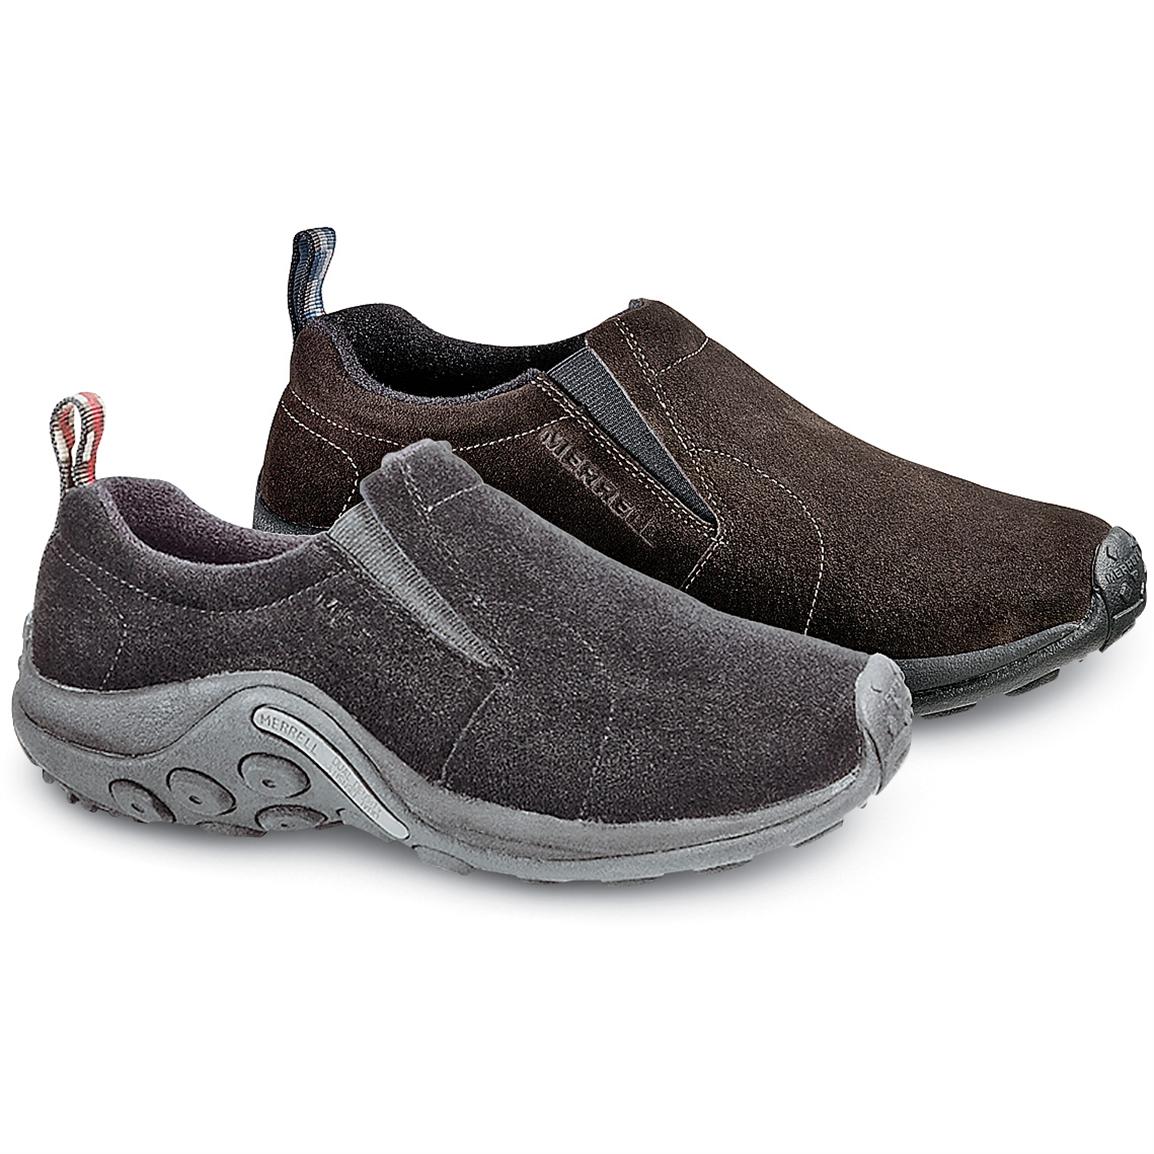 Men's Merrell Convertible Jungle Mocs - 95426, Casual Shoes at ...